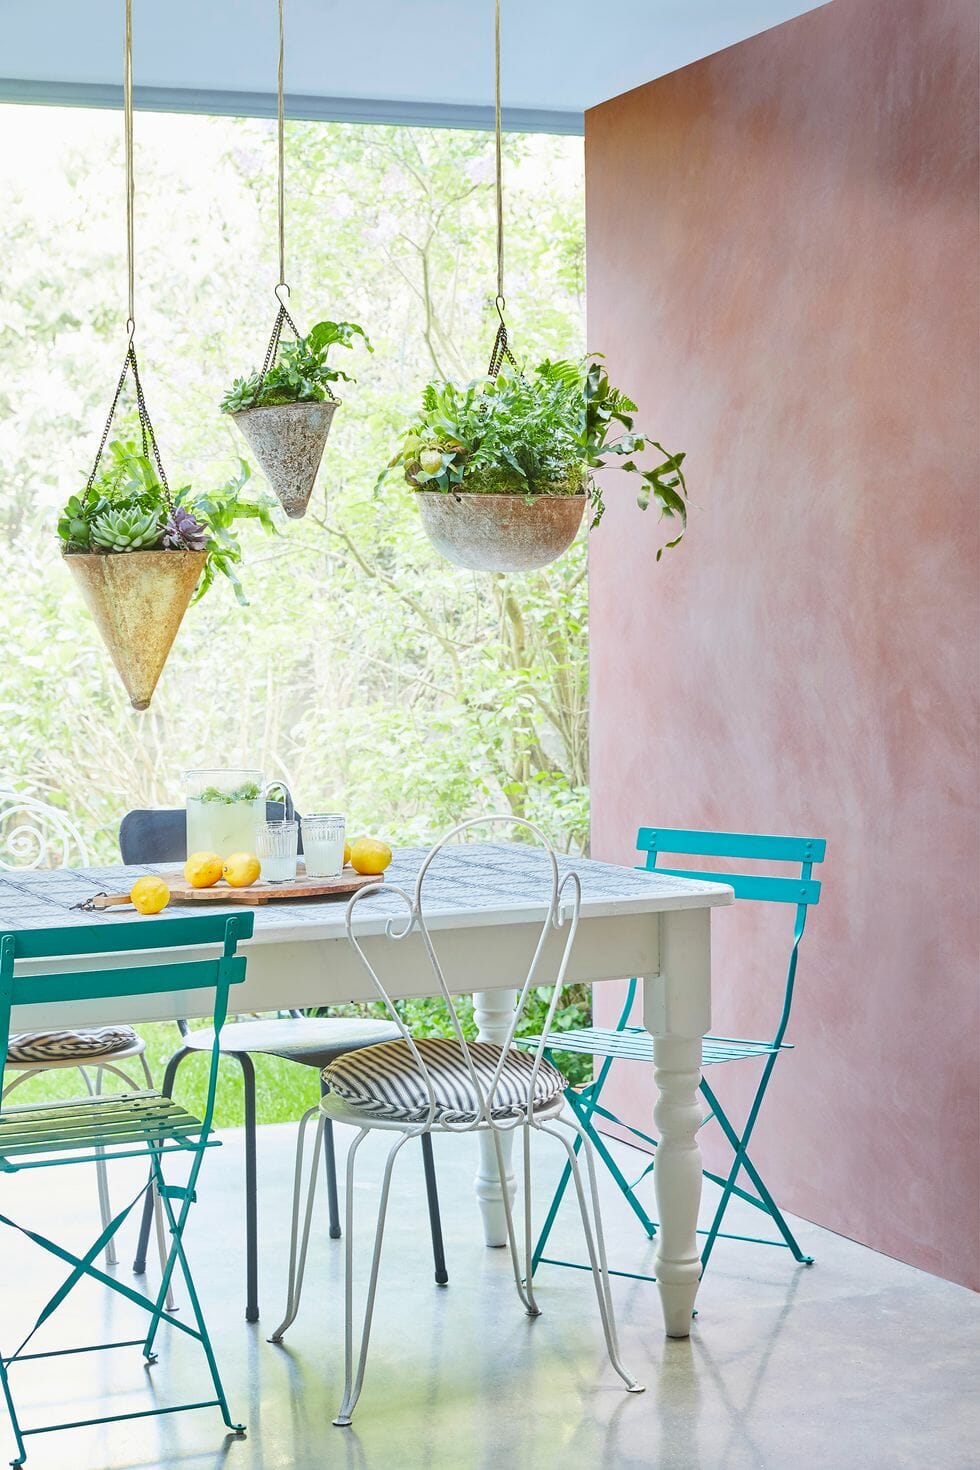 hình ảnh góc thư giãn nơi hiên nhà mùa hè với bức tường màu hồng phấn, ghế xanh ngọc, đèn thả bắt mắt